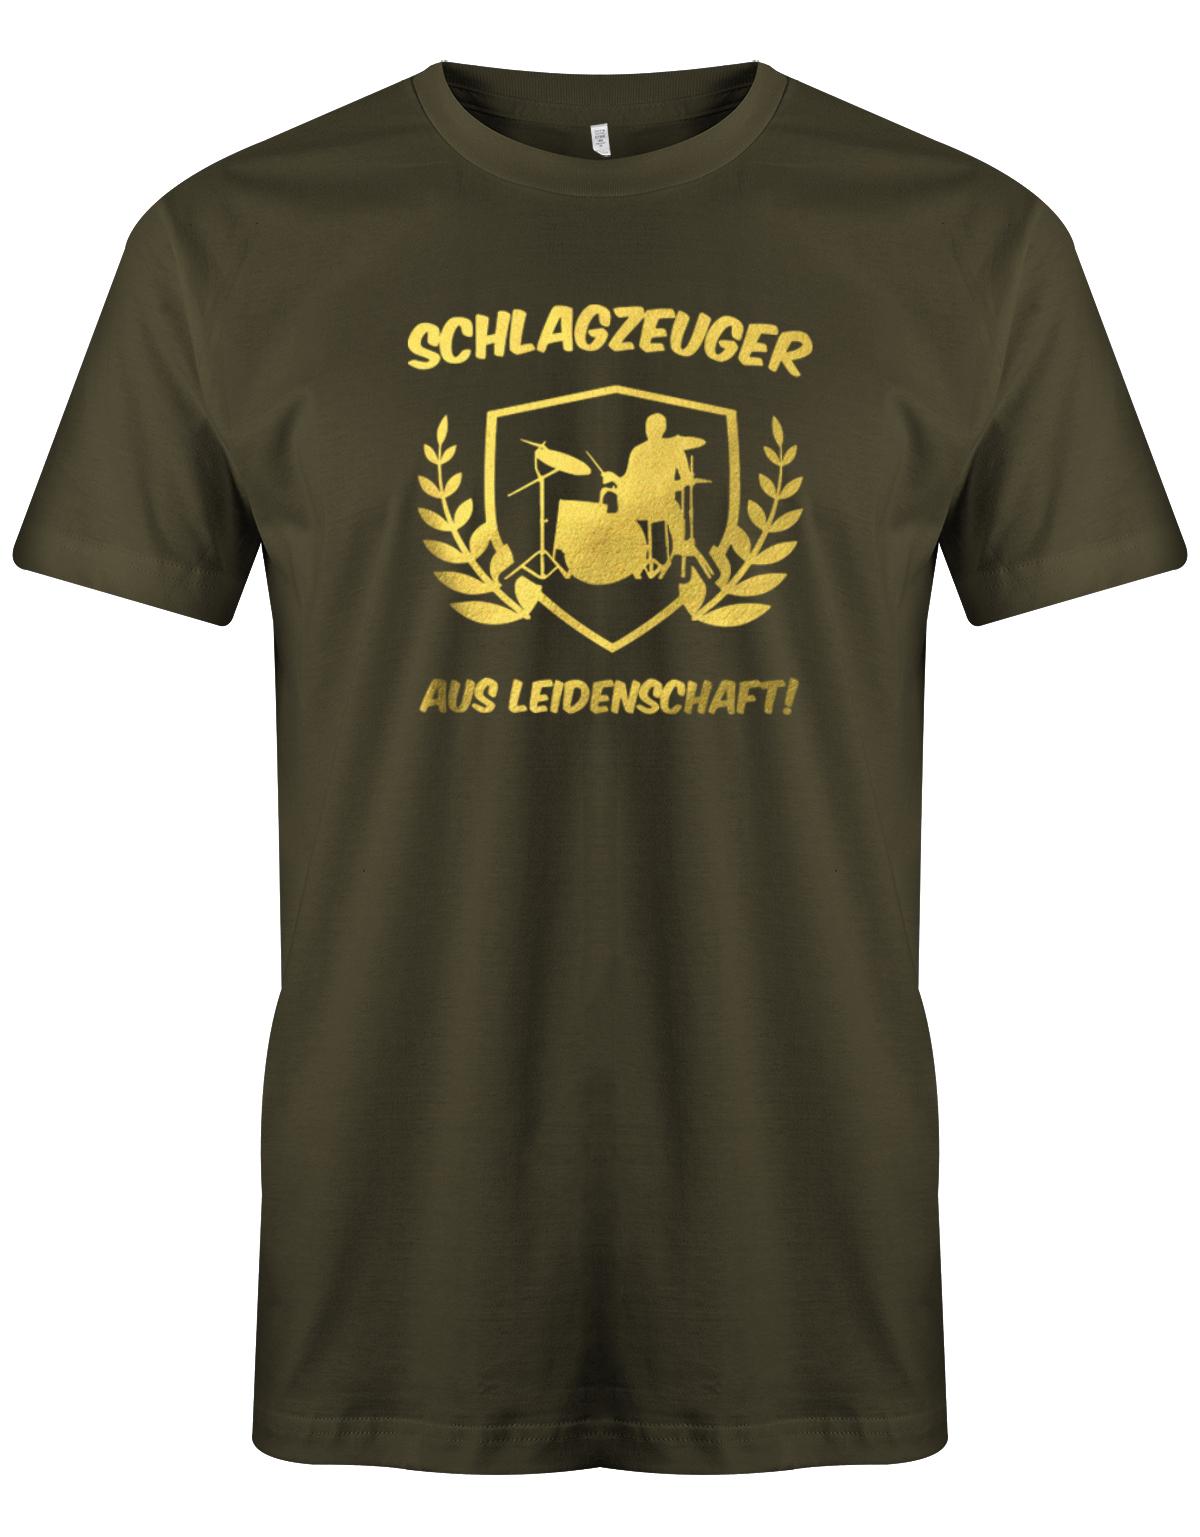 SChlagzeuger-aus-leidenschaft-Herren-Shirt-Army